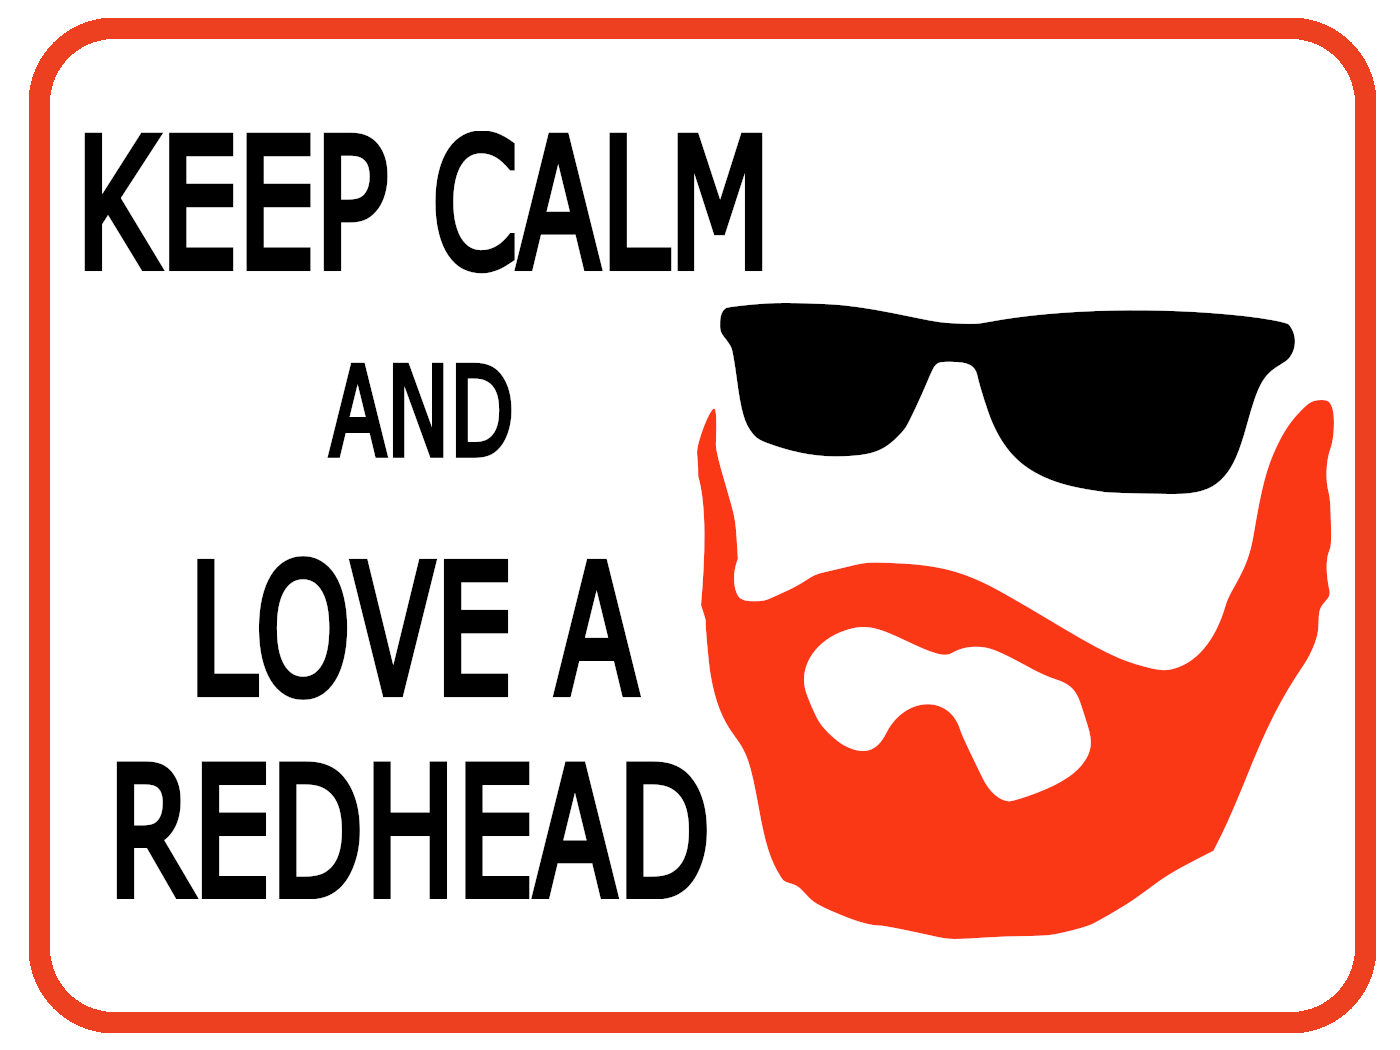 Keep Calm, Love a Redhead